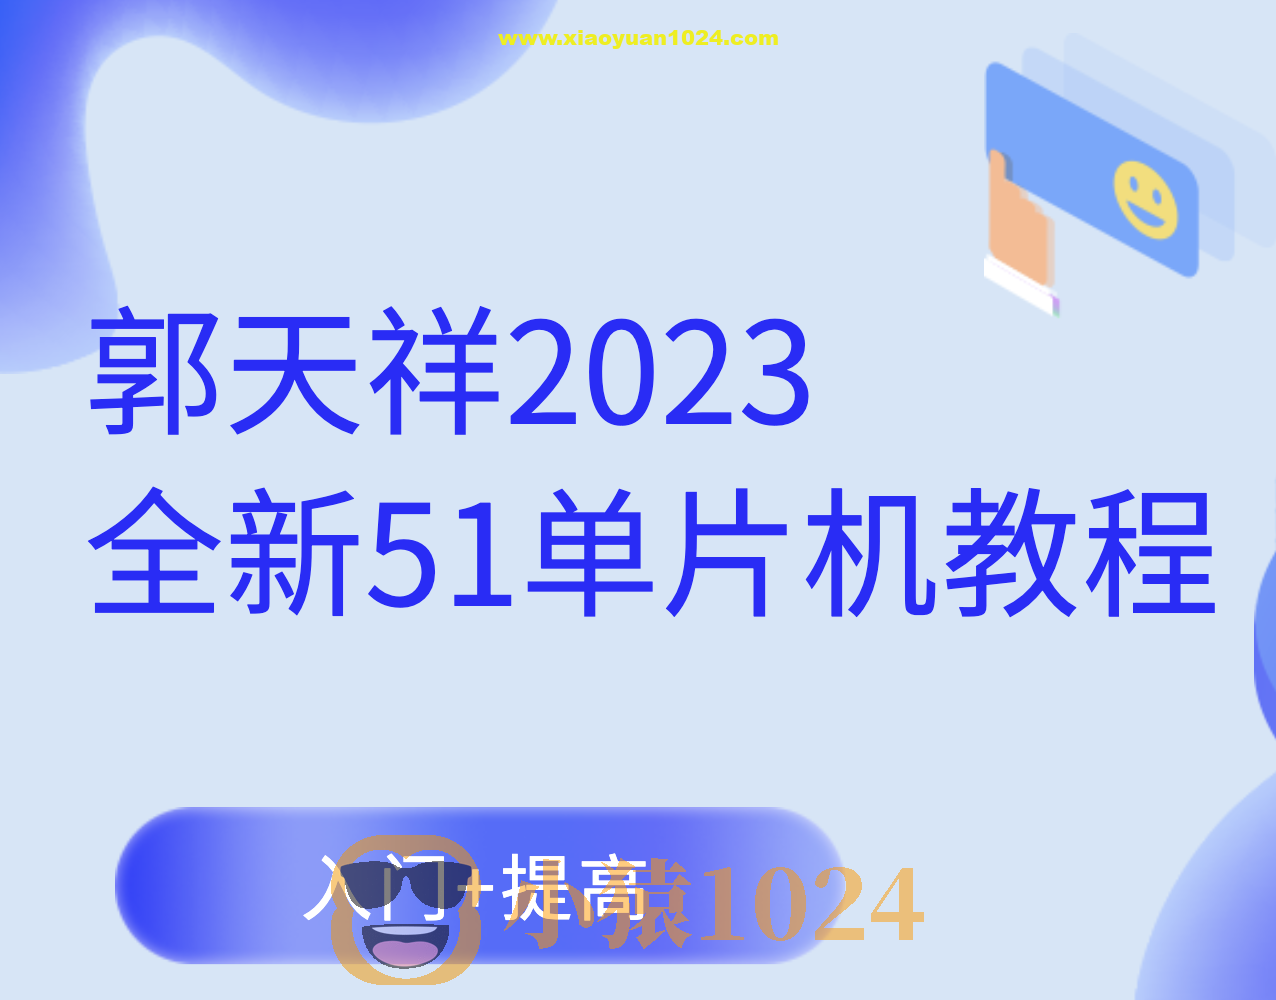 郭天祥2023全新51单片机教程-入门+提高